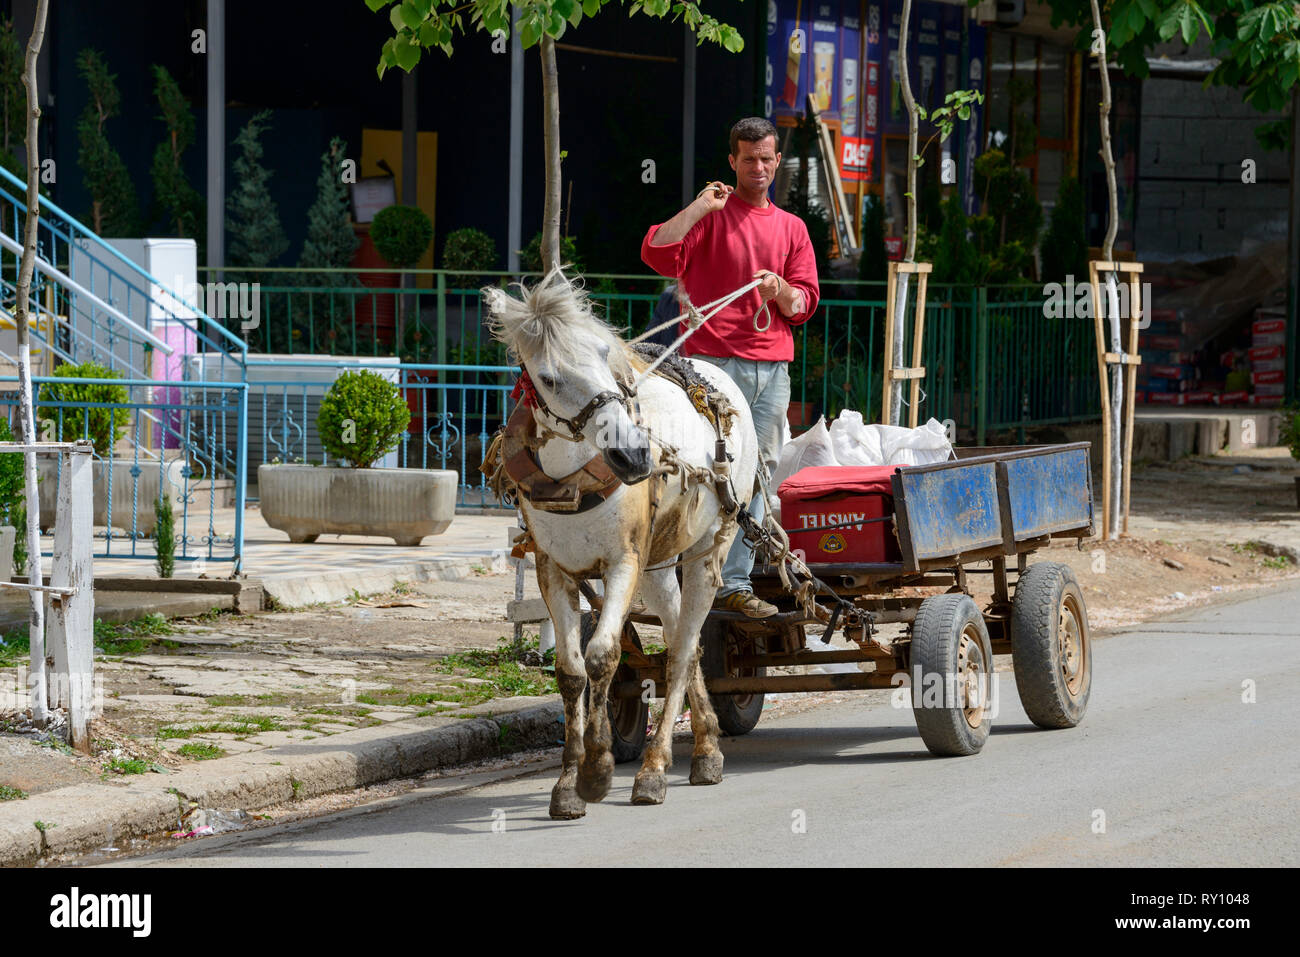 Horse with carriage, Peshkopi, Albania Stock Photo